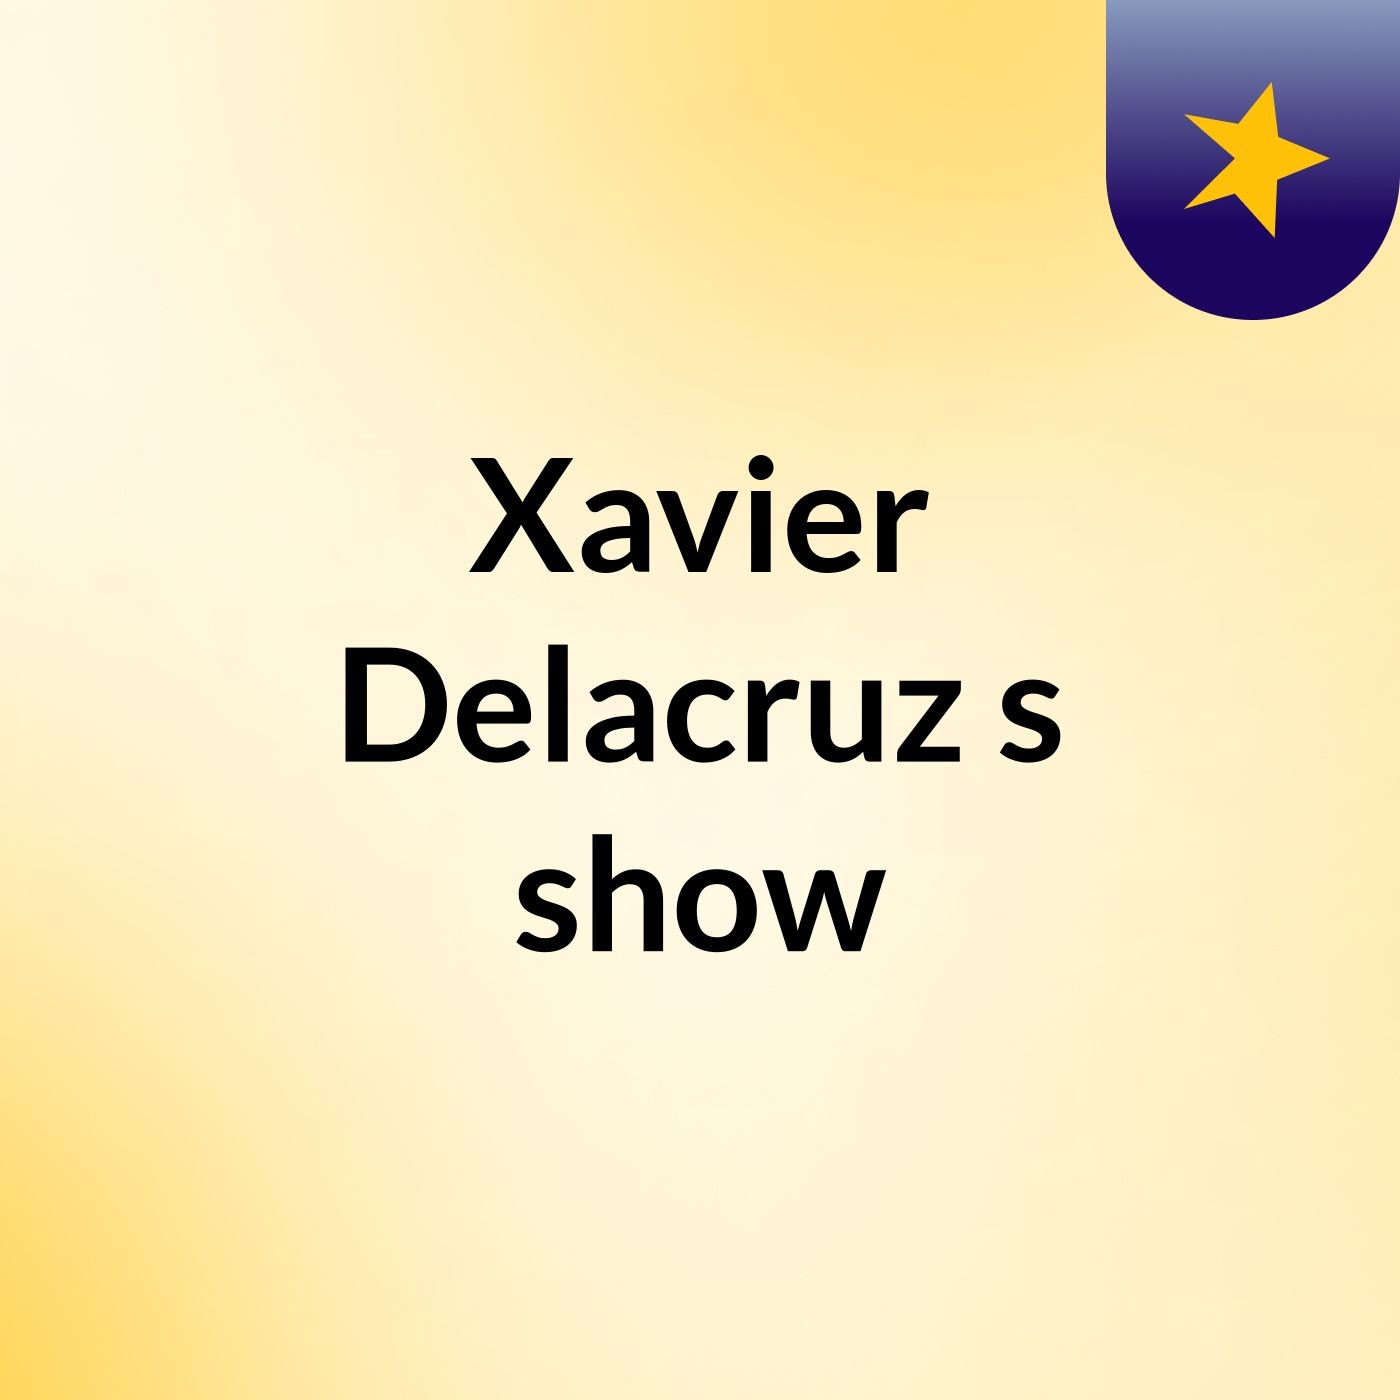 Episode 4 - Xavier Delacruz's show